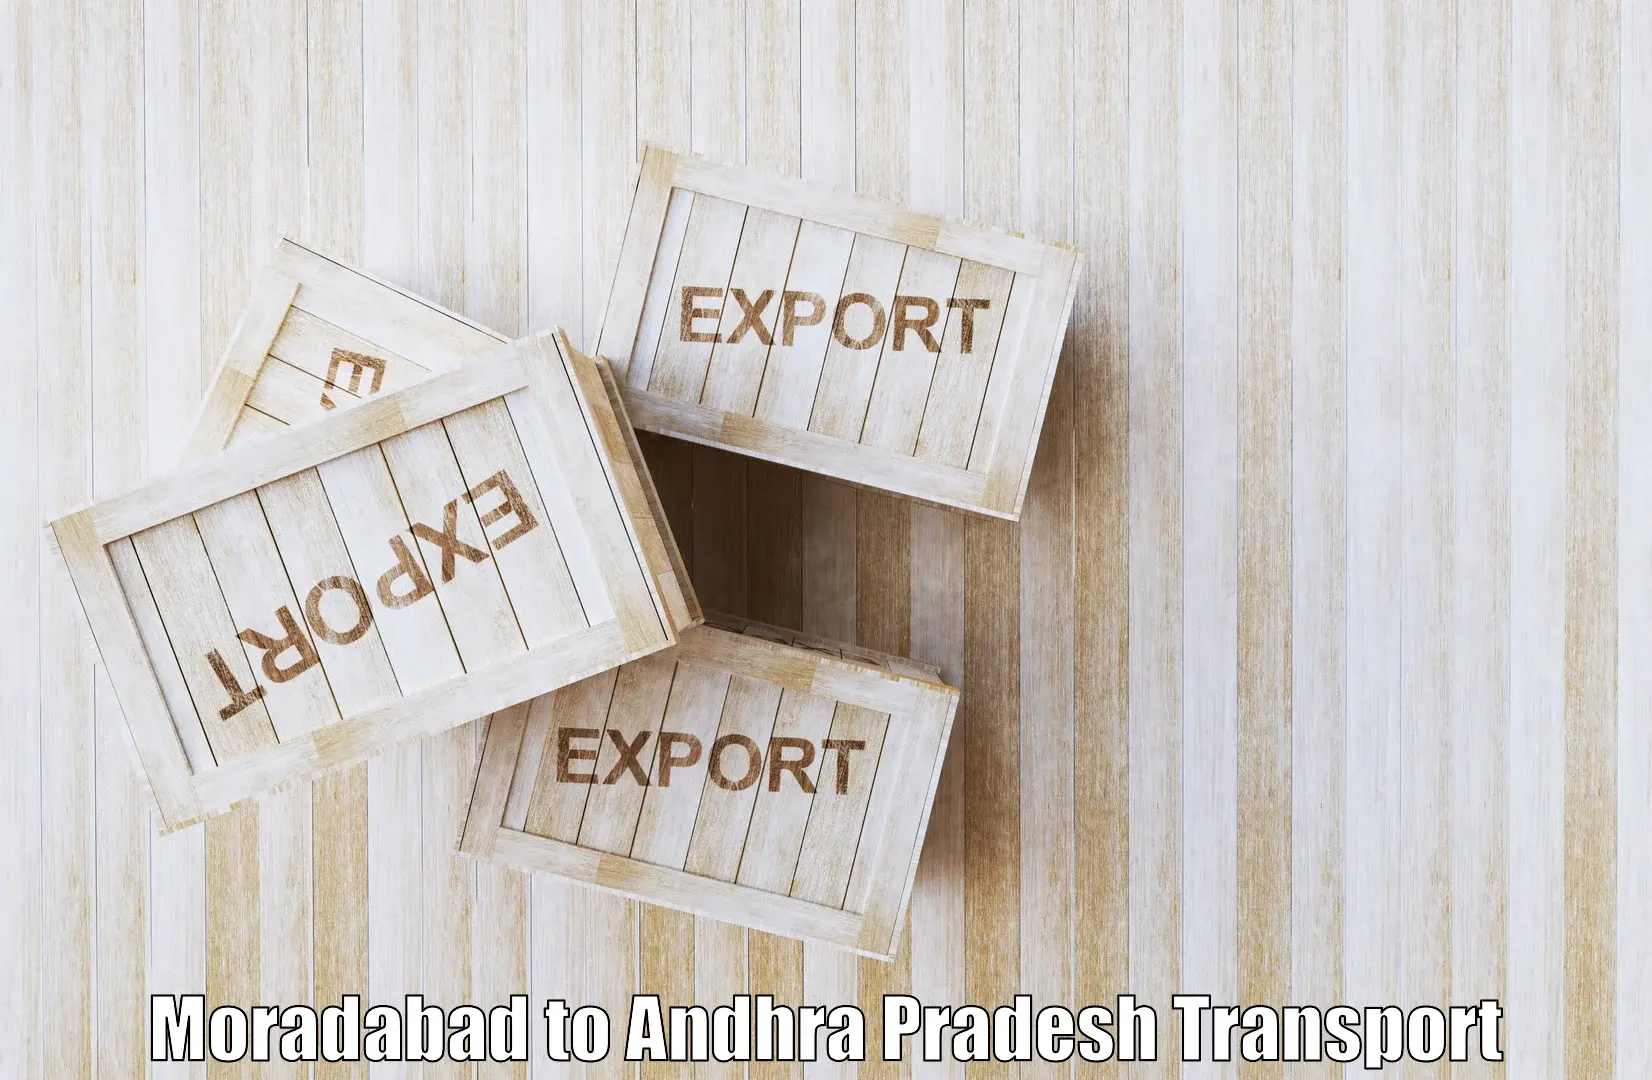 Online transport service Moradabad to Proddatur